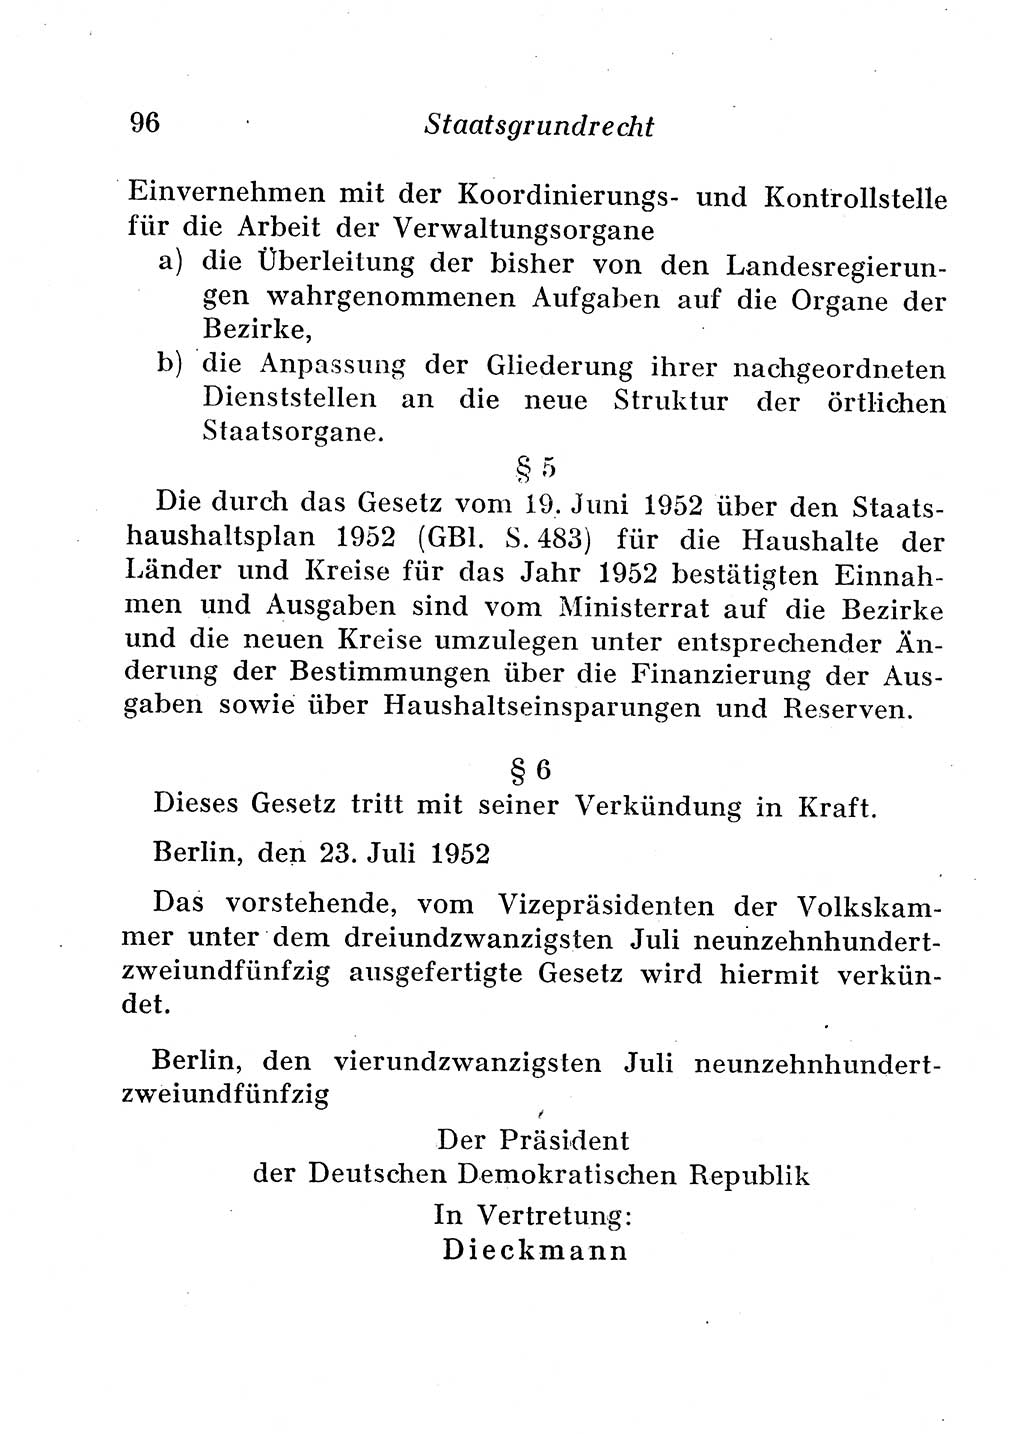 Staats- und verwaltungsrechtliche Gesetze der Deutschen Demokratischen Republik (DDR) 1958, Seite 96 (StVerwR Ges. DDR 1958, S. 96)